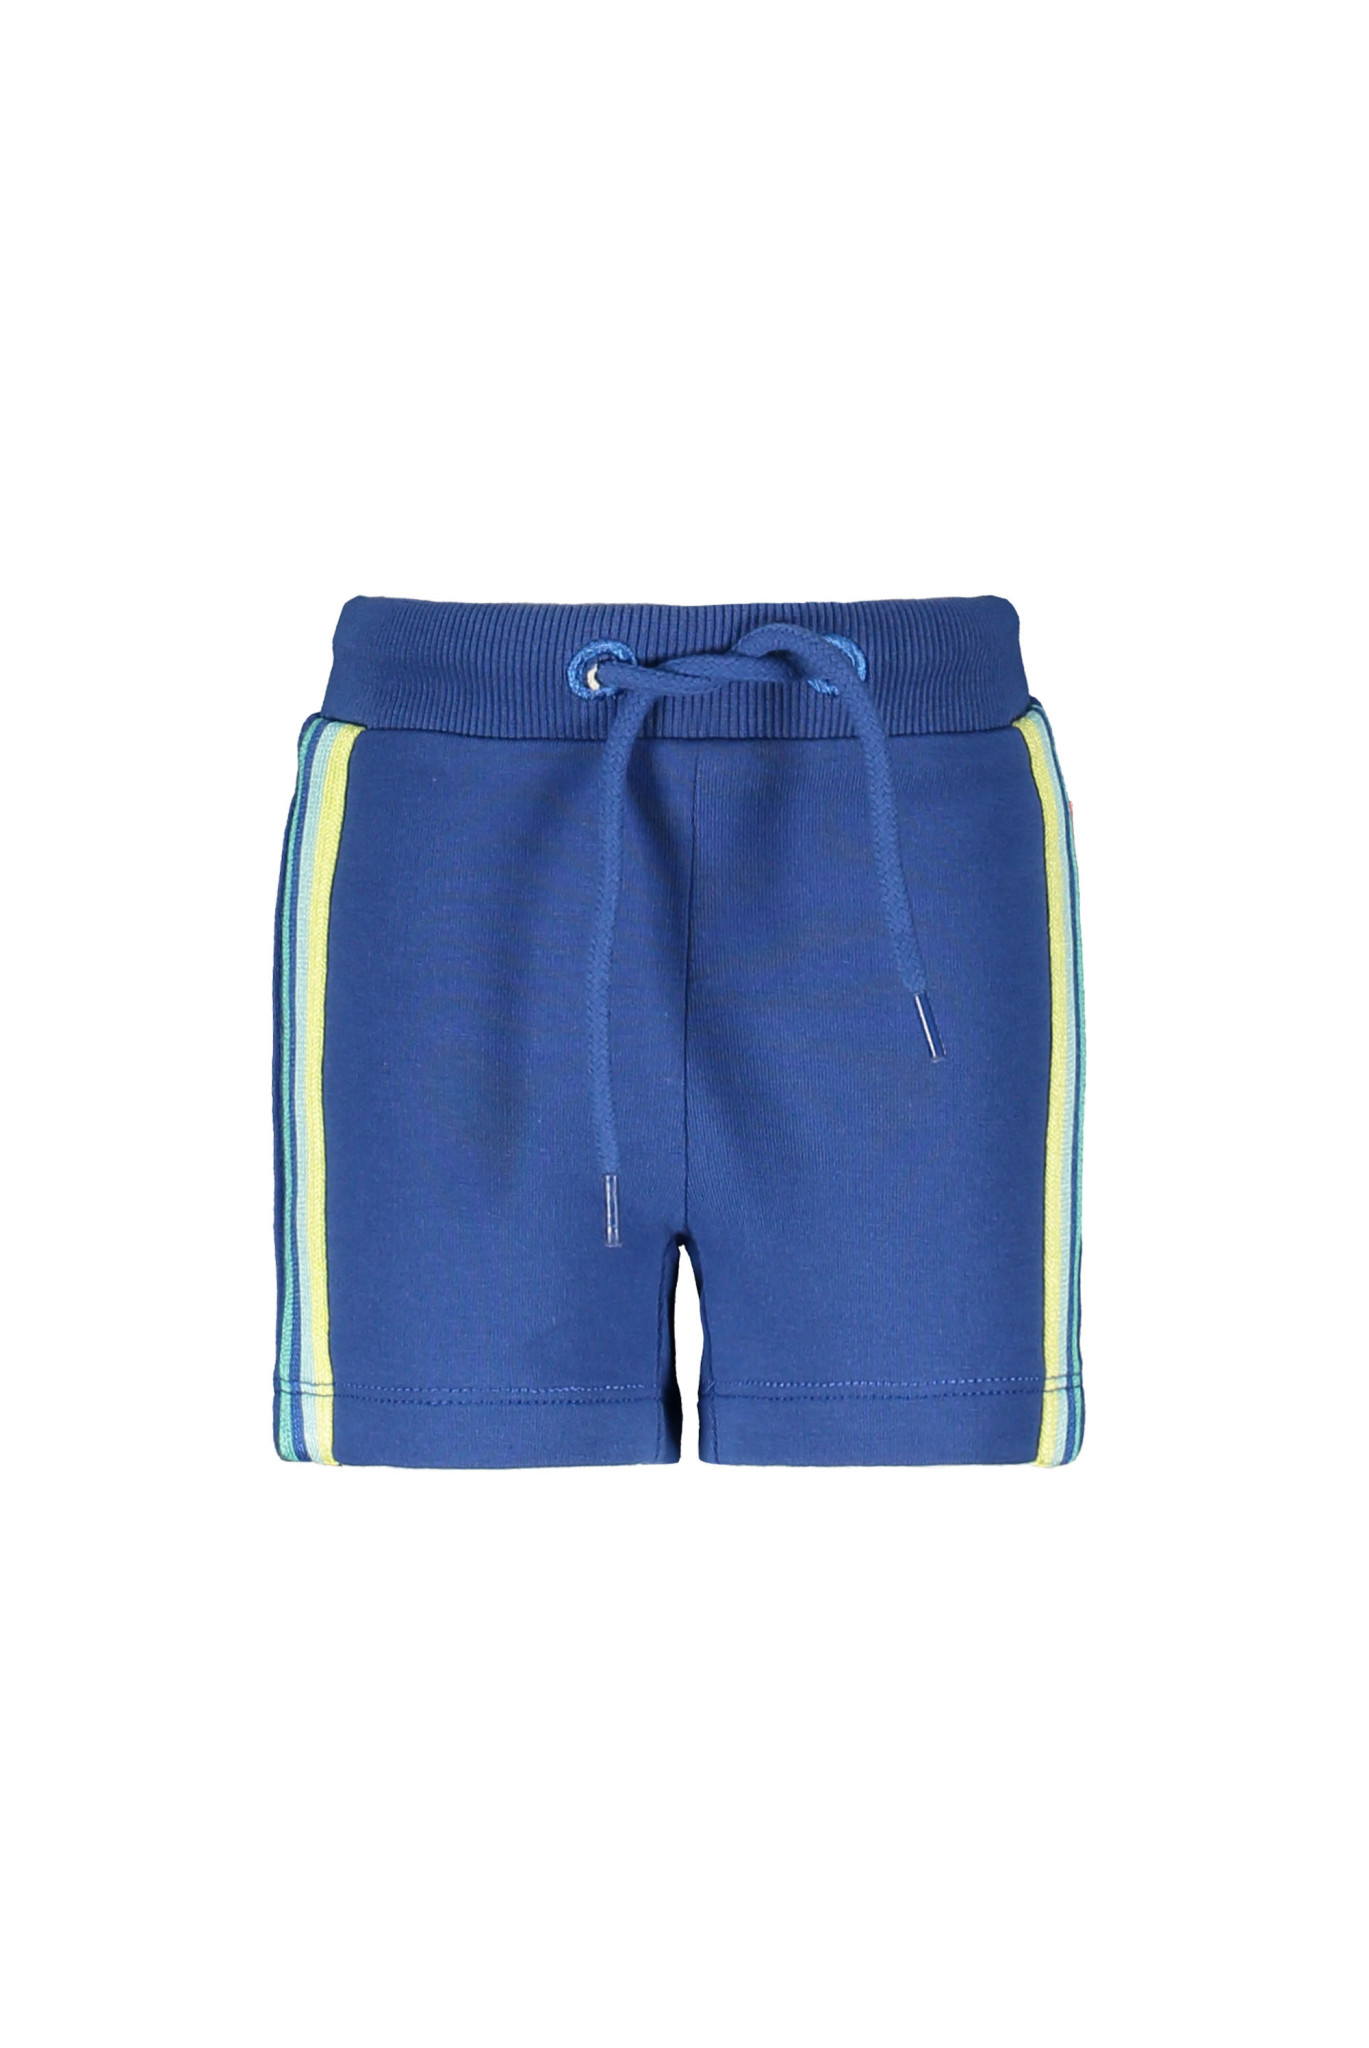 Afbeelding van Bampidano Baby jongens korte joggingbroek eliah blue